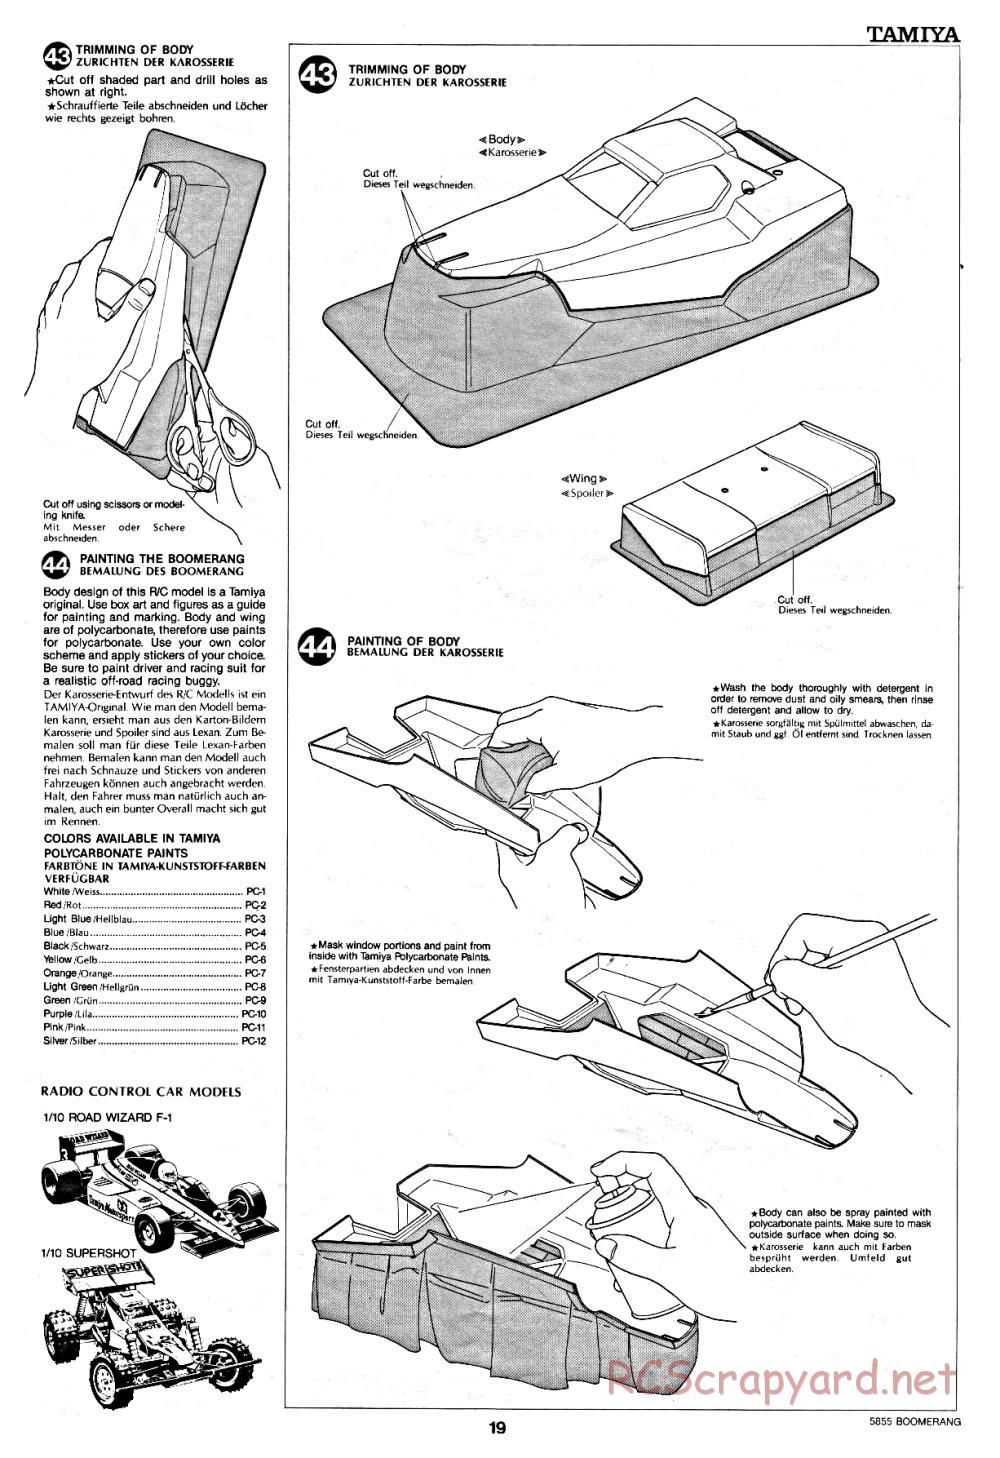 Tamiya - The Boomerang - 58055 - Manual - Page 19